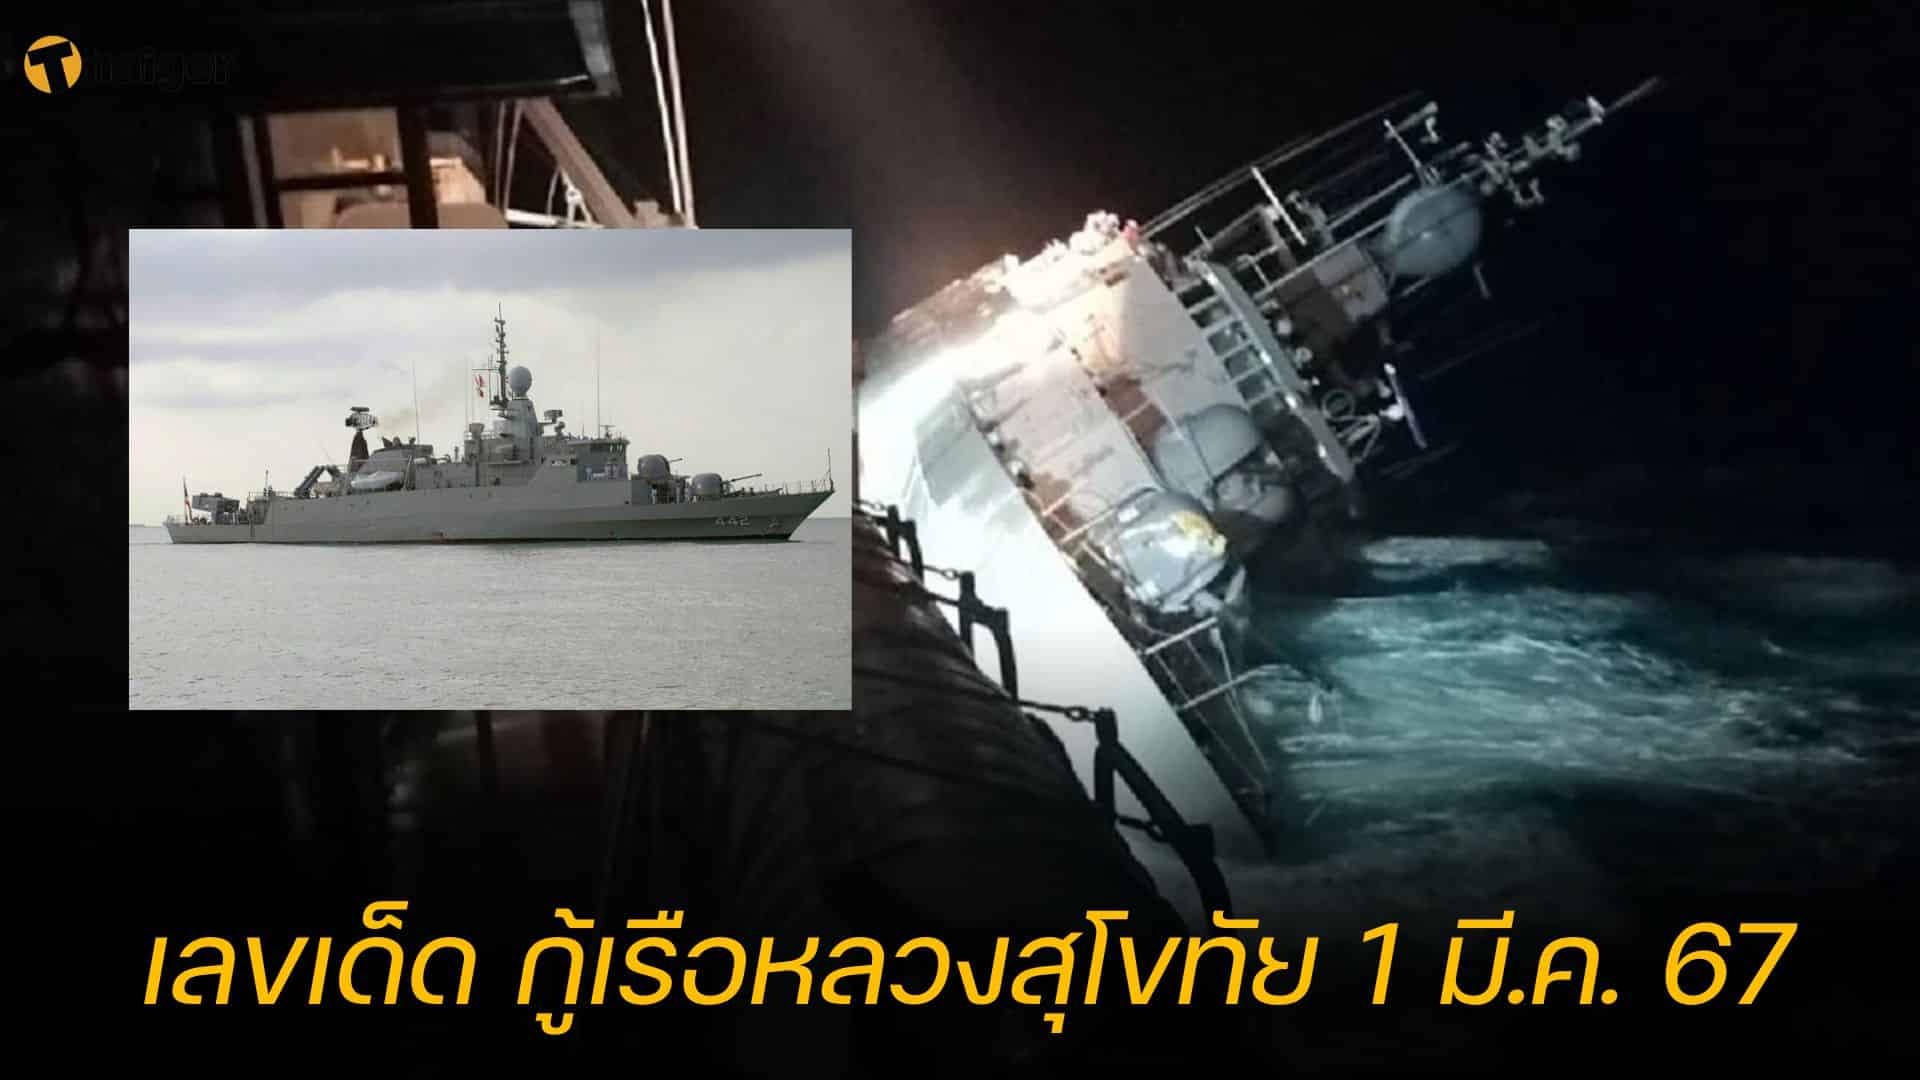 เลขเด็ด กู้เรือหลวงสุโขทัย ค้นหาผู้สูญหาย ลุ้นเข้างวด 1/3/67 | Thaiger ข่าวไทย